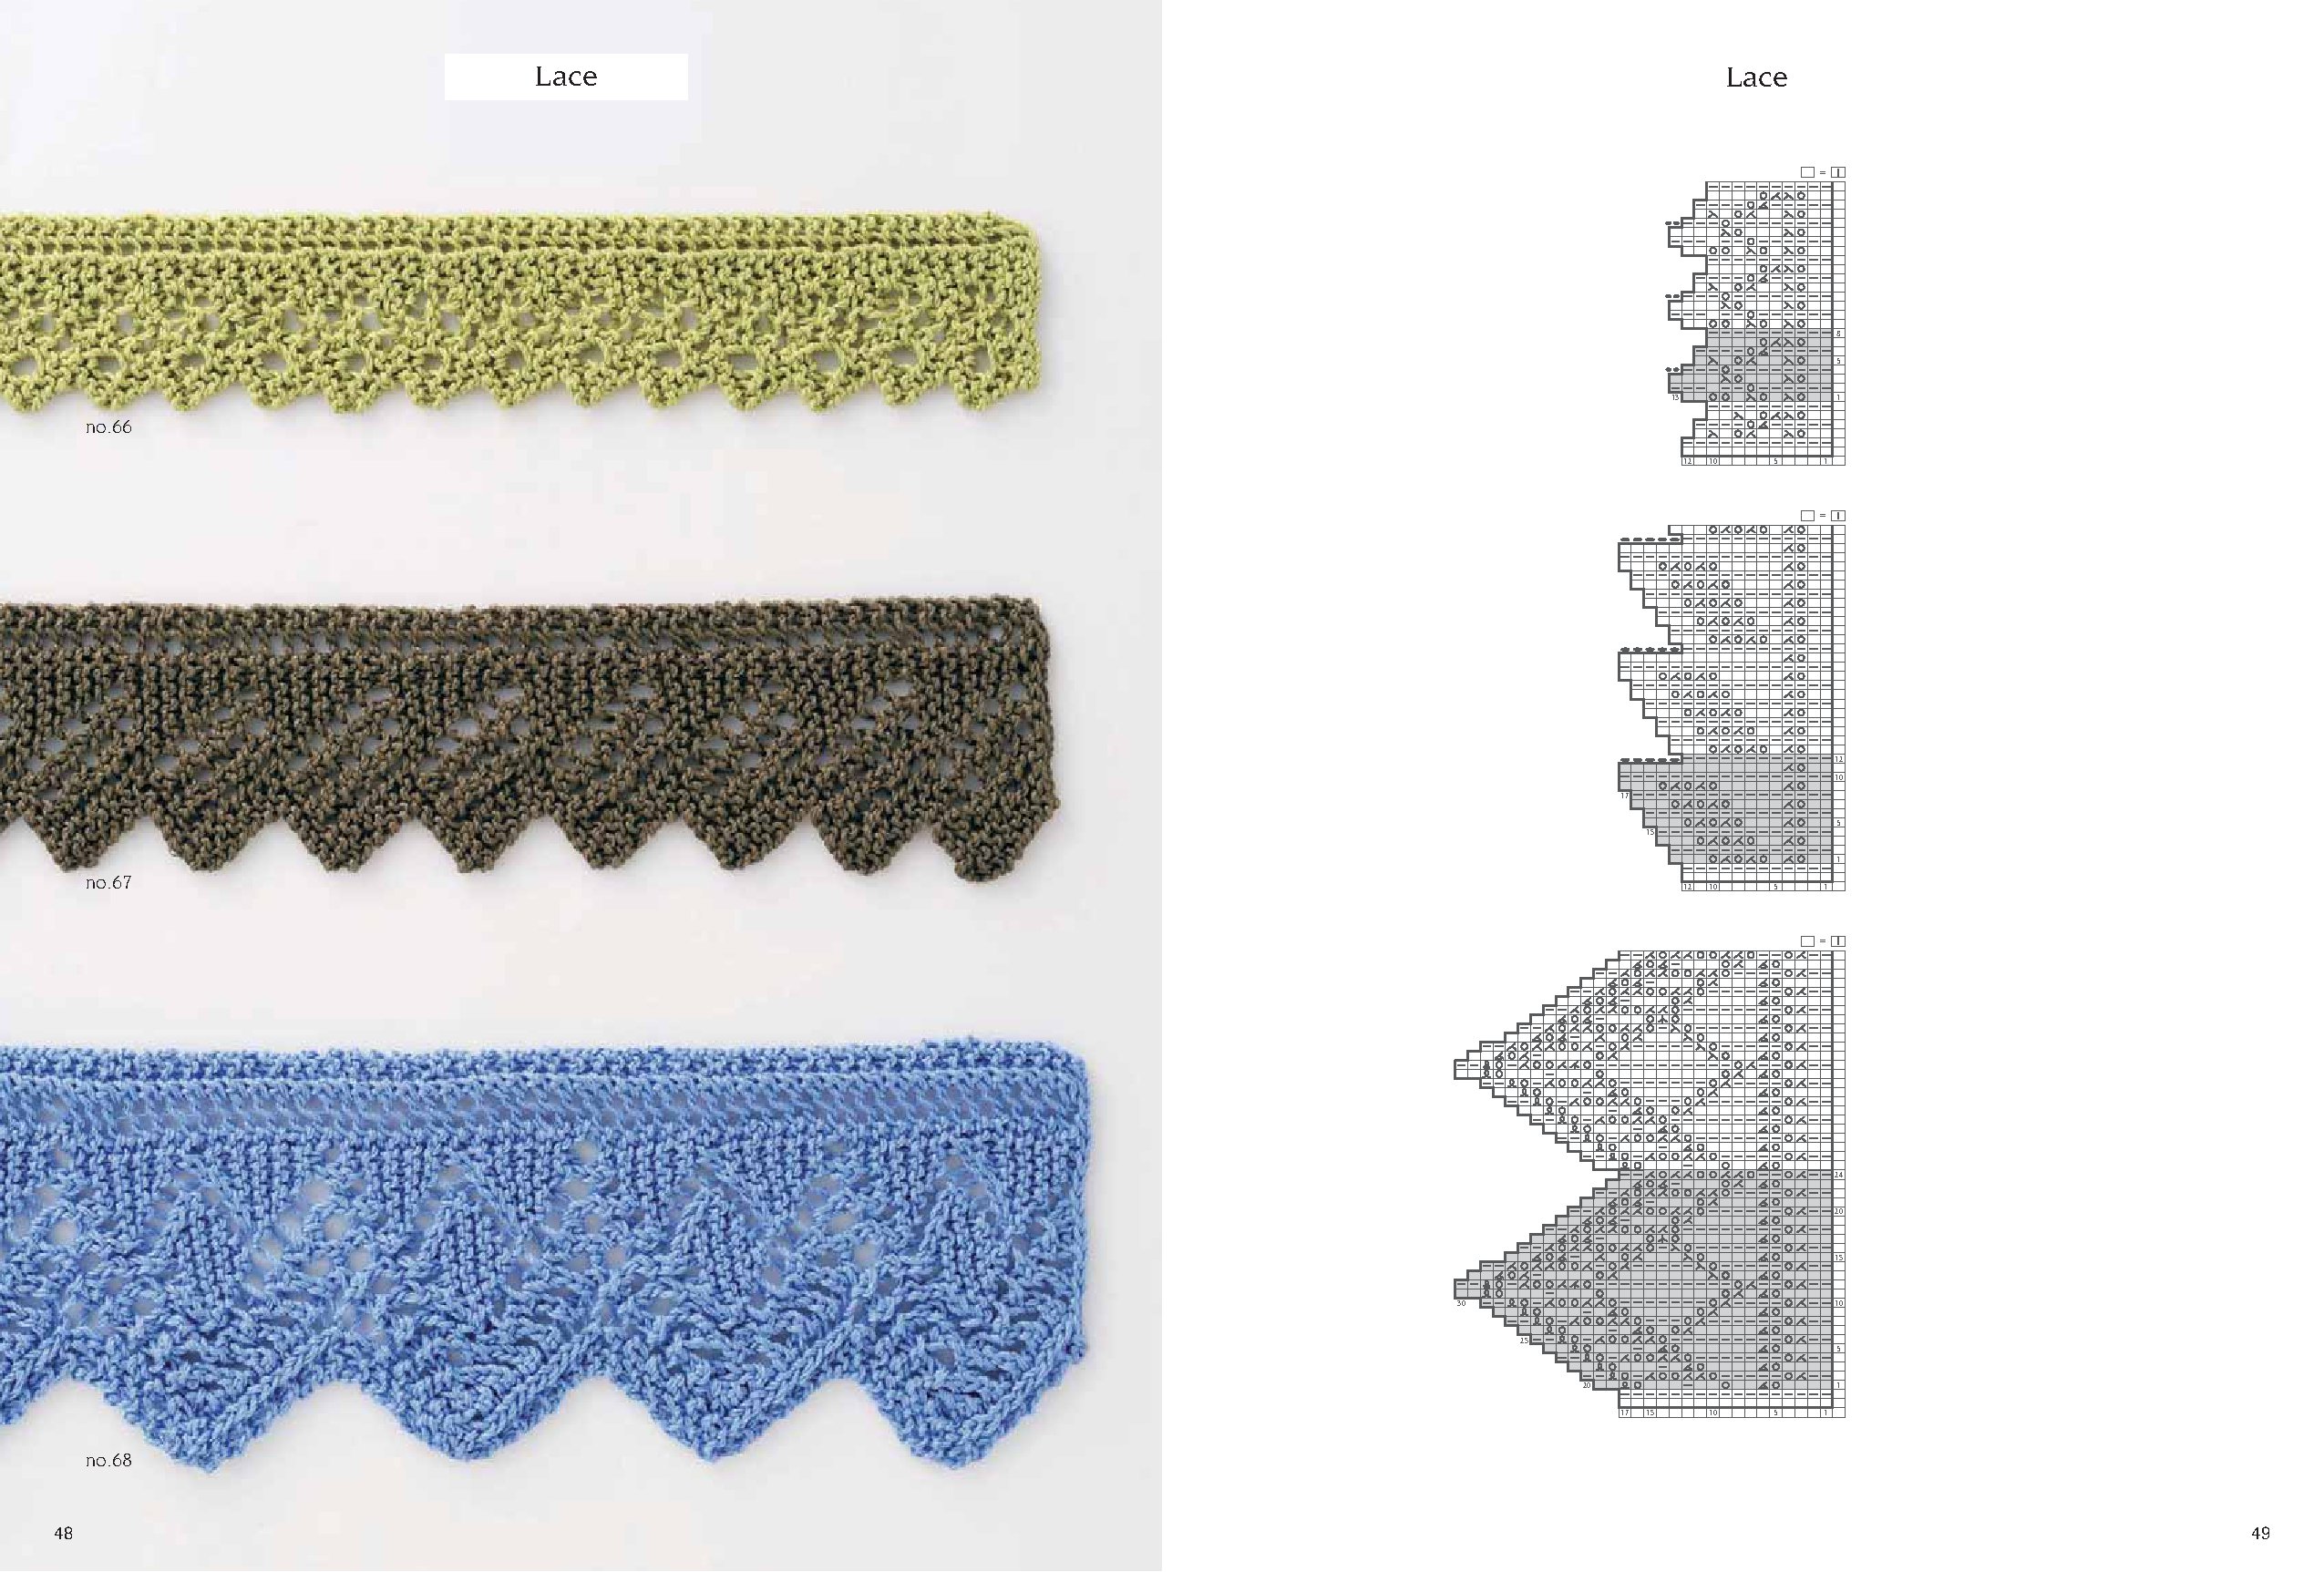 Japanese Knitting Stitches from Tokyo's Kazekobo Studio